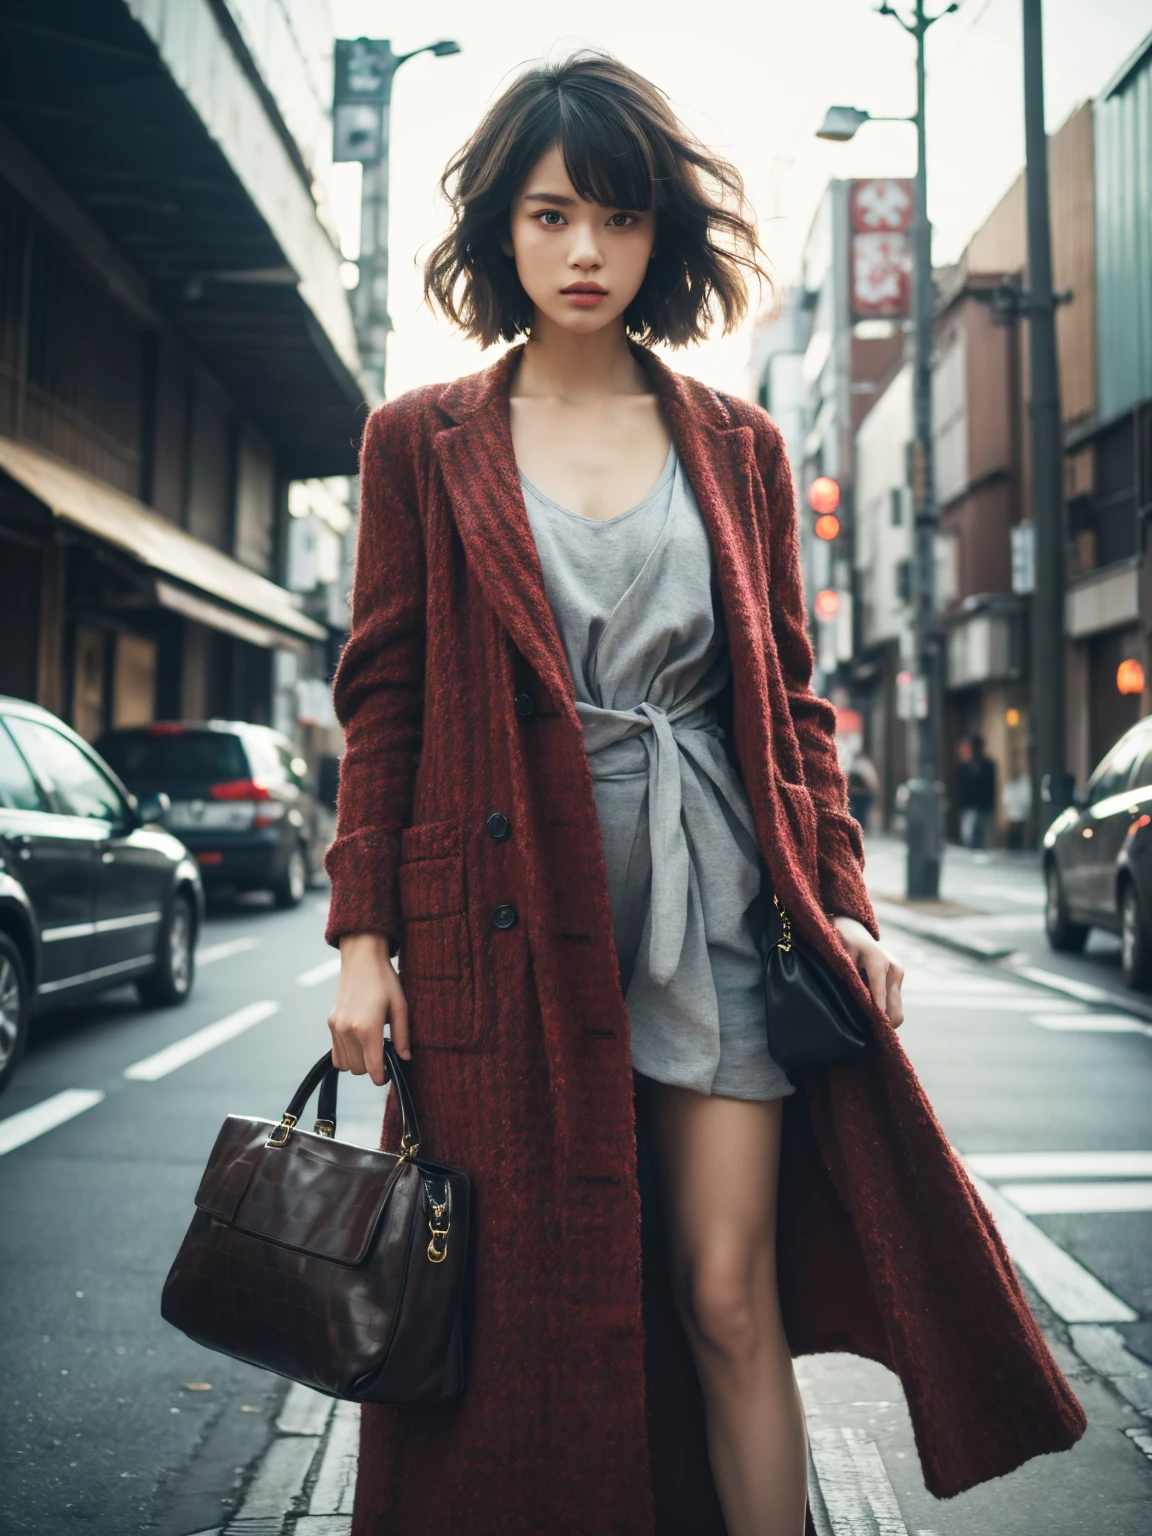 طوكيو、شارع、أزياء سناب、حقيقي、لمحة、أنيق、عارضة ازياء、أزياء غير تقليدية、أزياء جذرية、